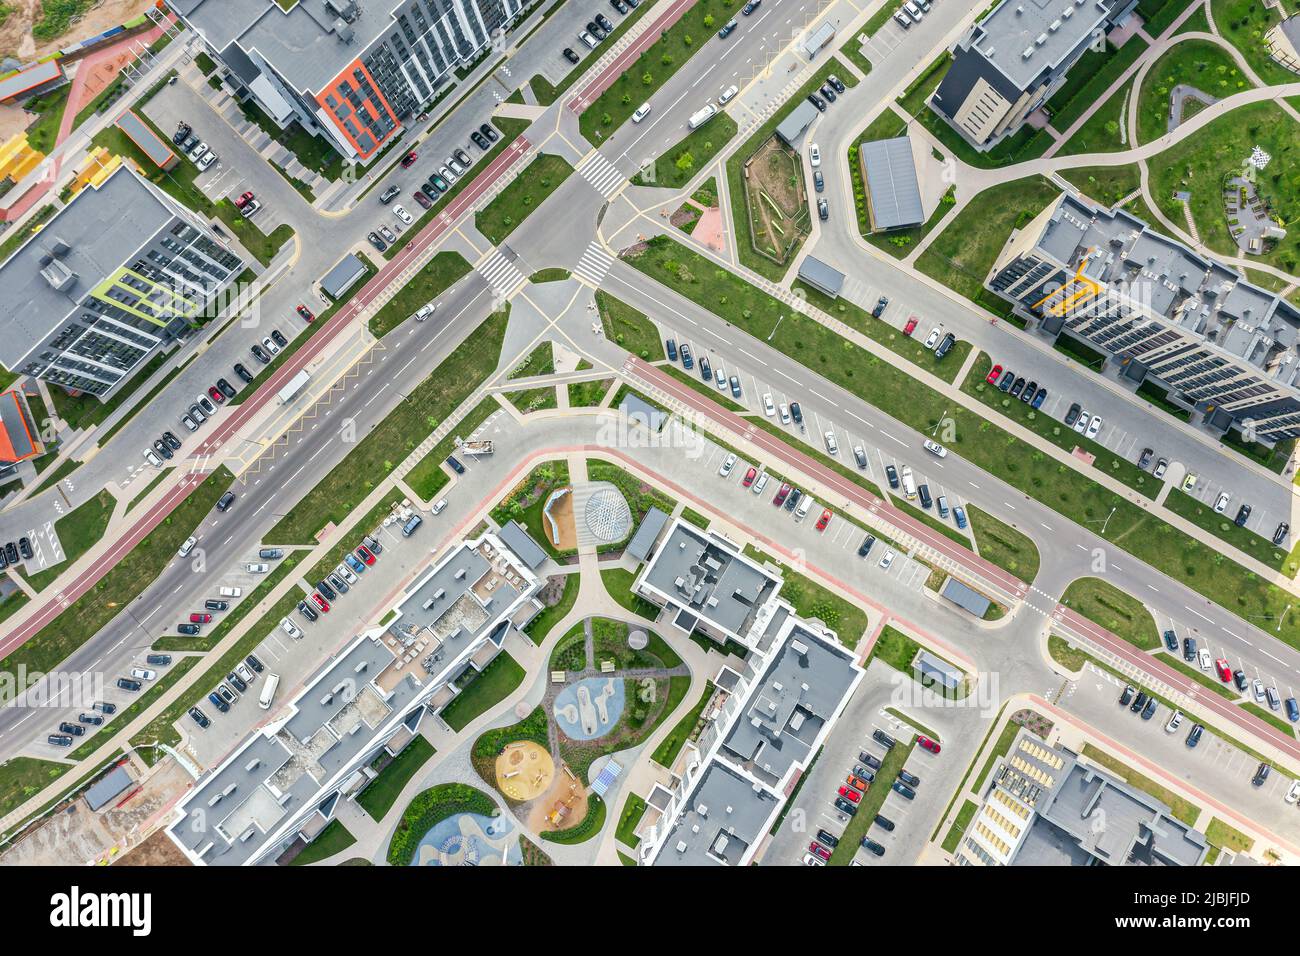 area residenziale con moderni edifici di appartamenti, parcheggi, auto, parchi giochi. vista dall'alto aerea. Foto Stock